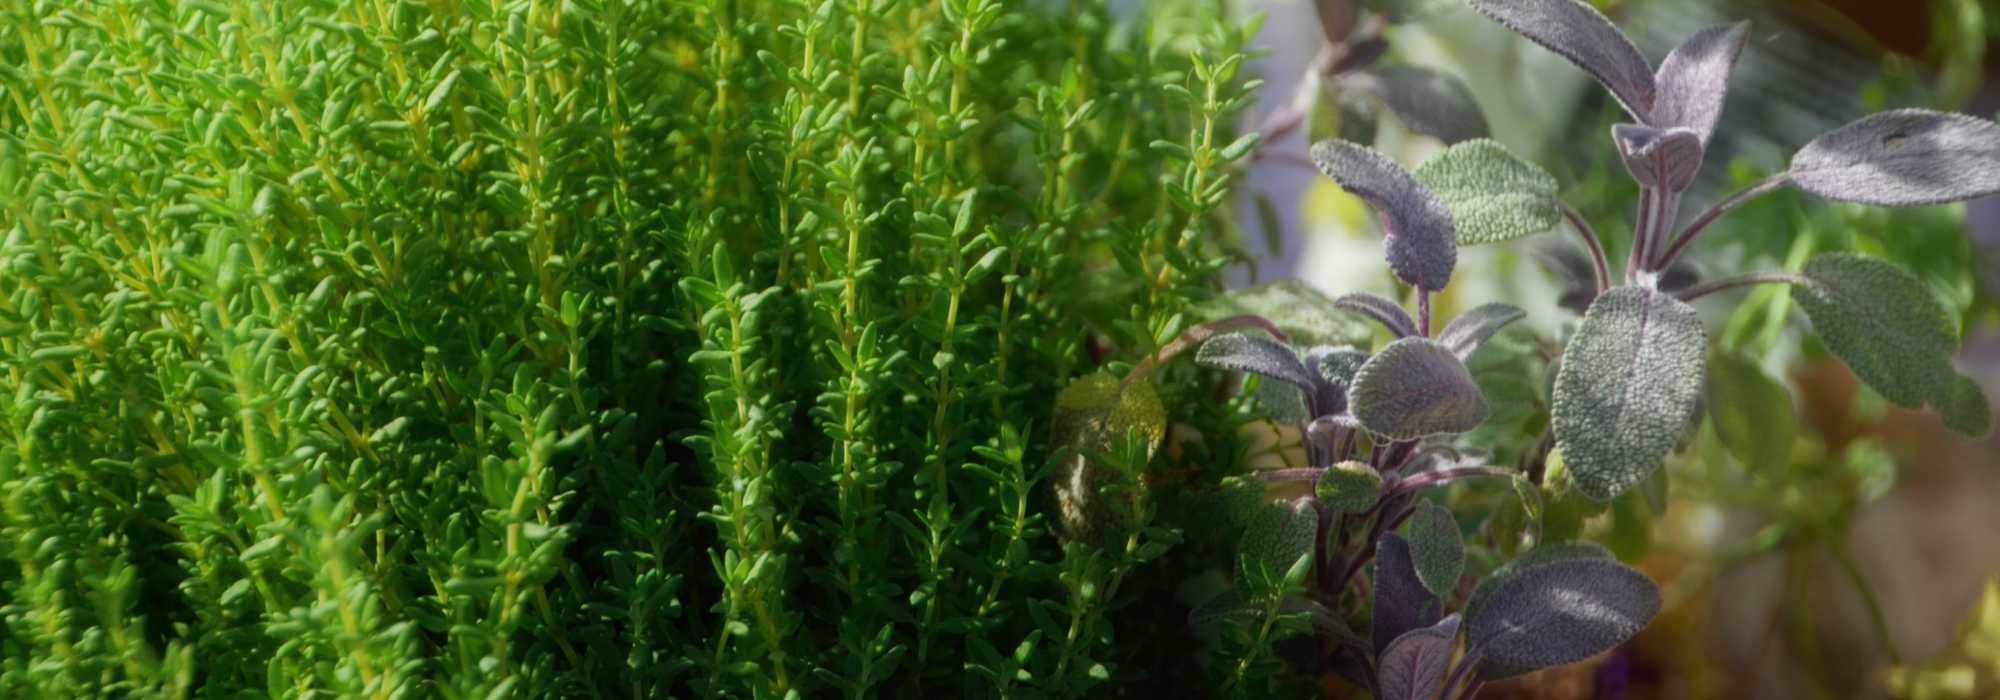 Le thym, une plante médicinale et stimulante dans votre jardin aromatique